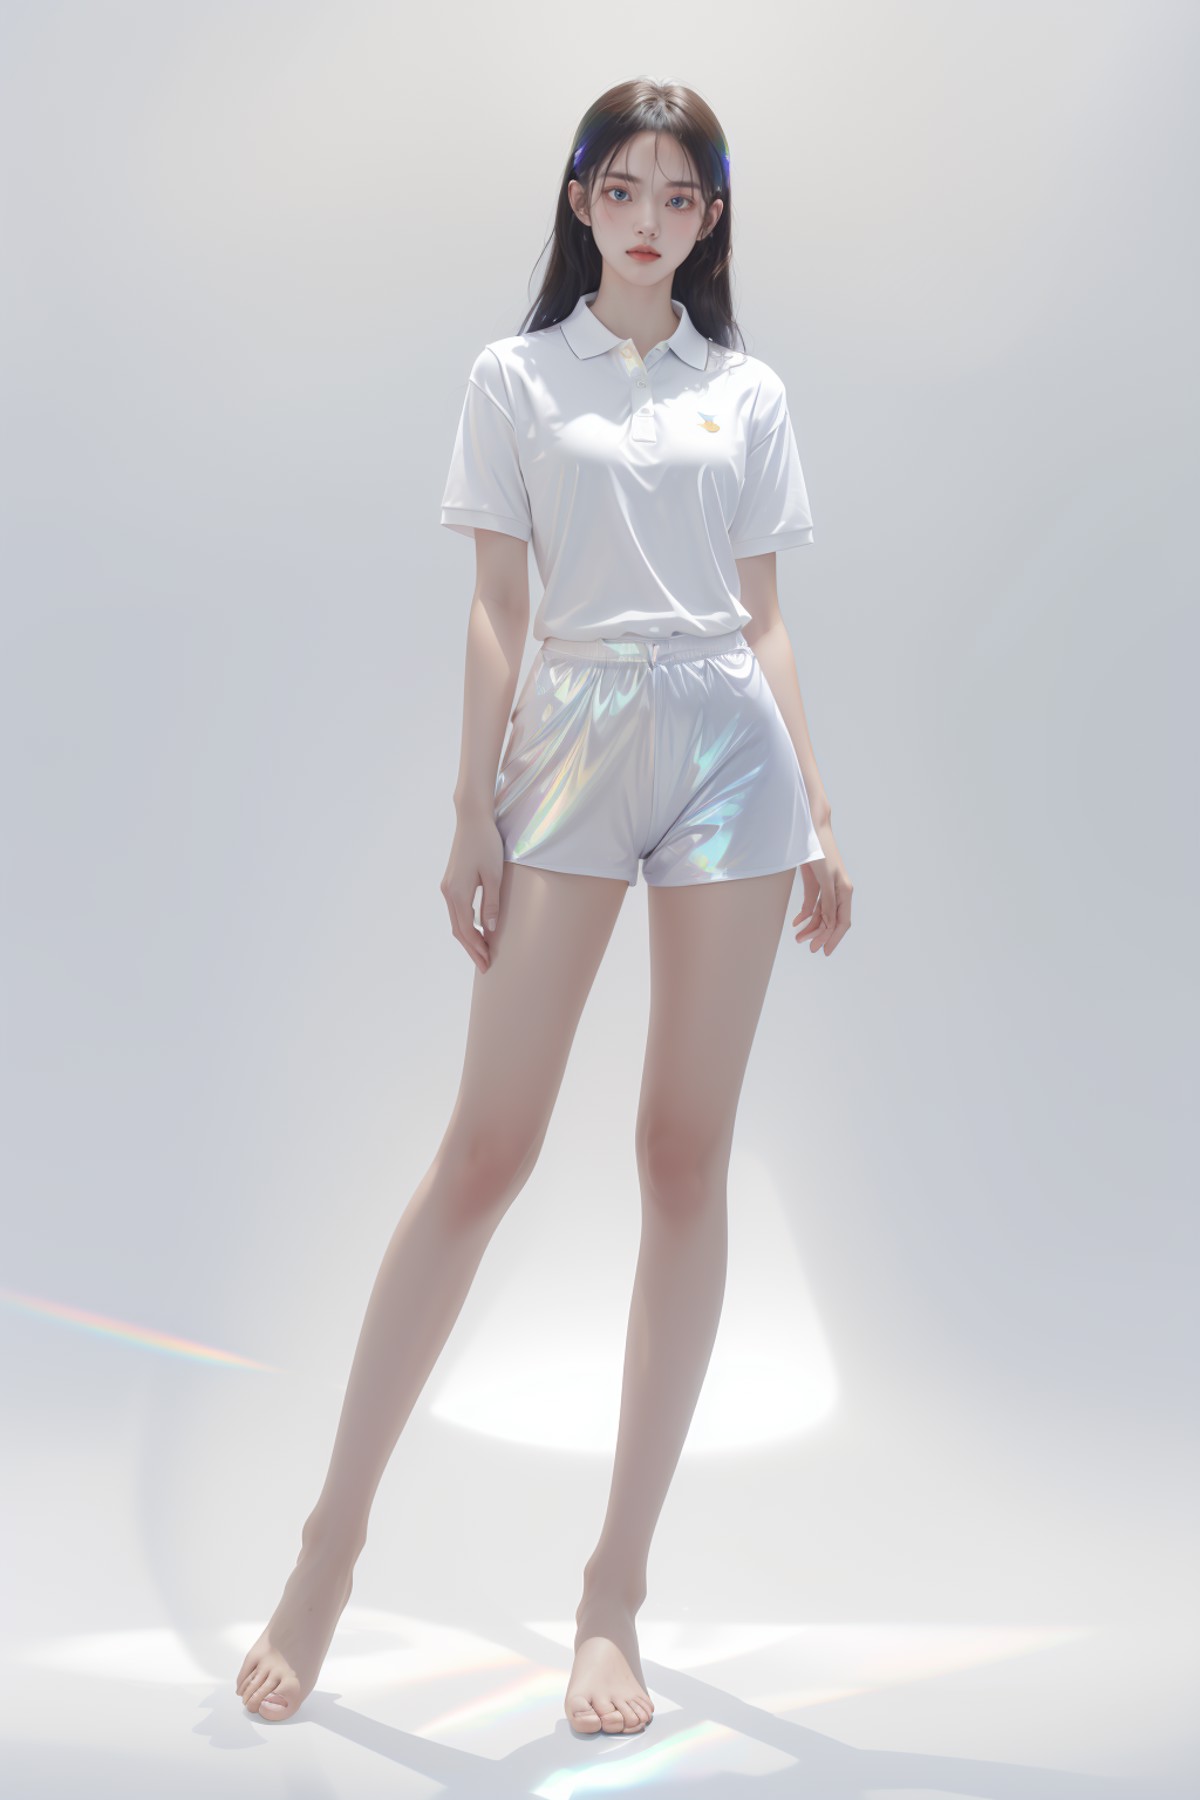 1girl, full body, polo shirt, iridescence, jewelry, white background, long hair,<lora:liuli3beta:1.2>